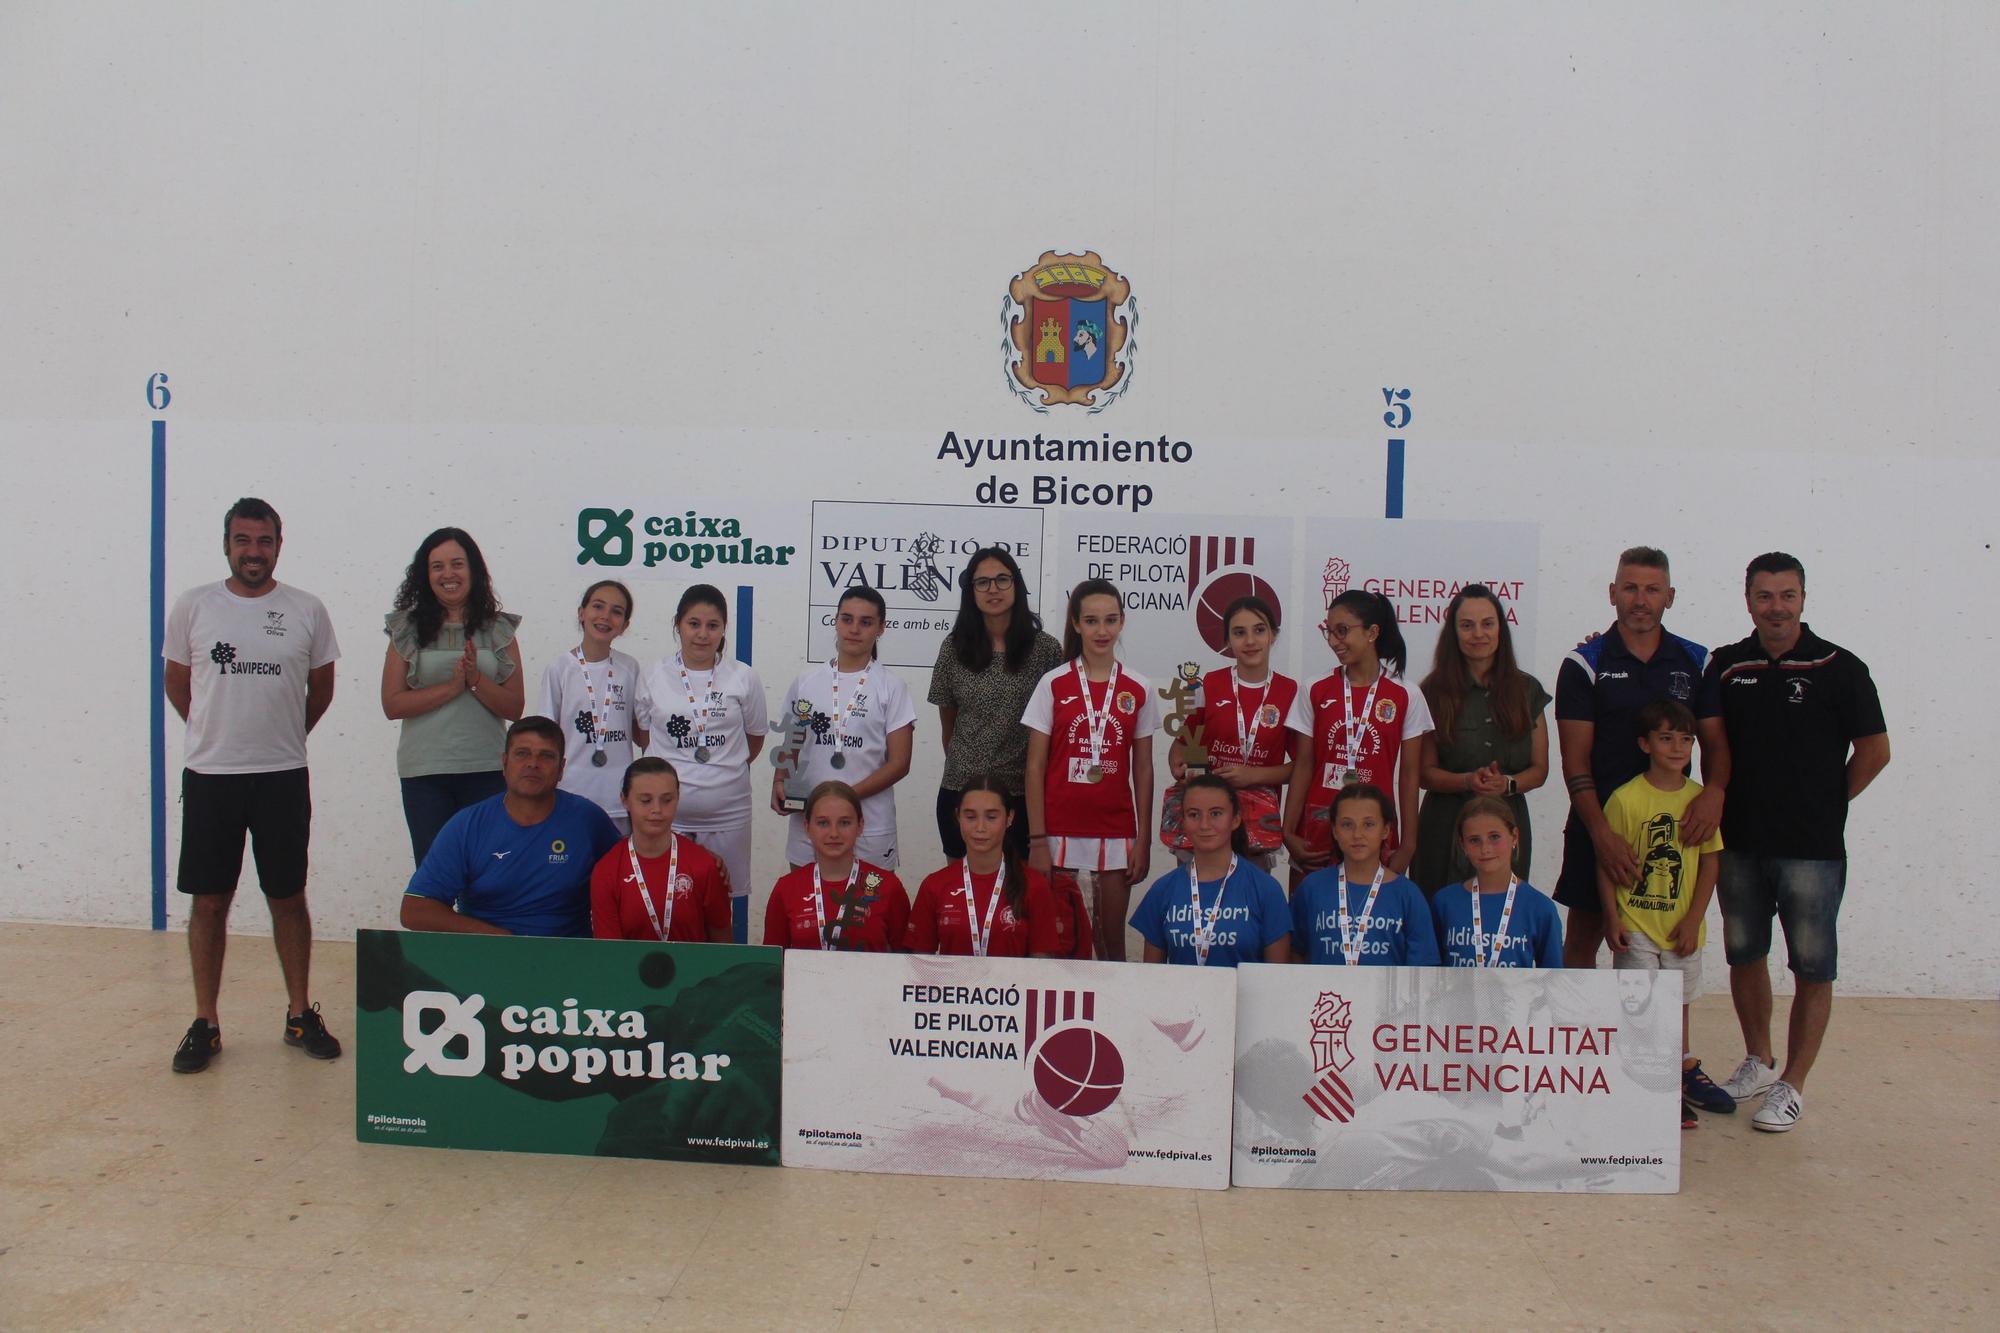 Els 41 Jocs Esportius de la Comunitat Valenciana de les Trobades femenines de raspall han celebrat aquest cap de setmana la fase final autonòmica el dissabte en Alcàsser i el diumenge en Bicorp.